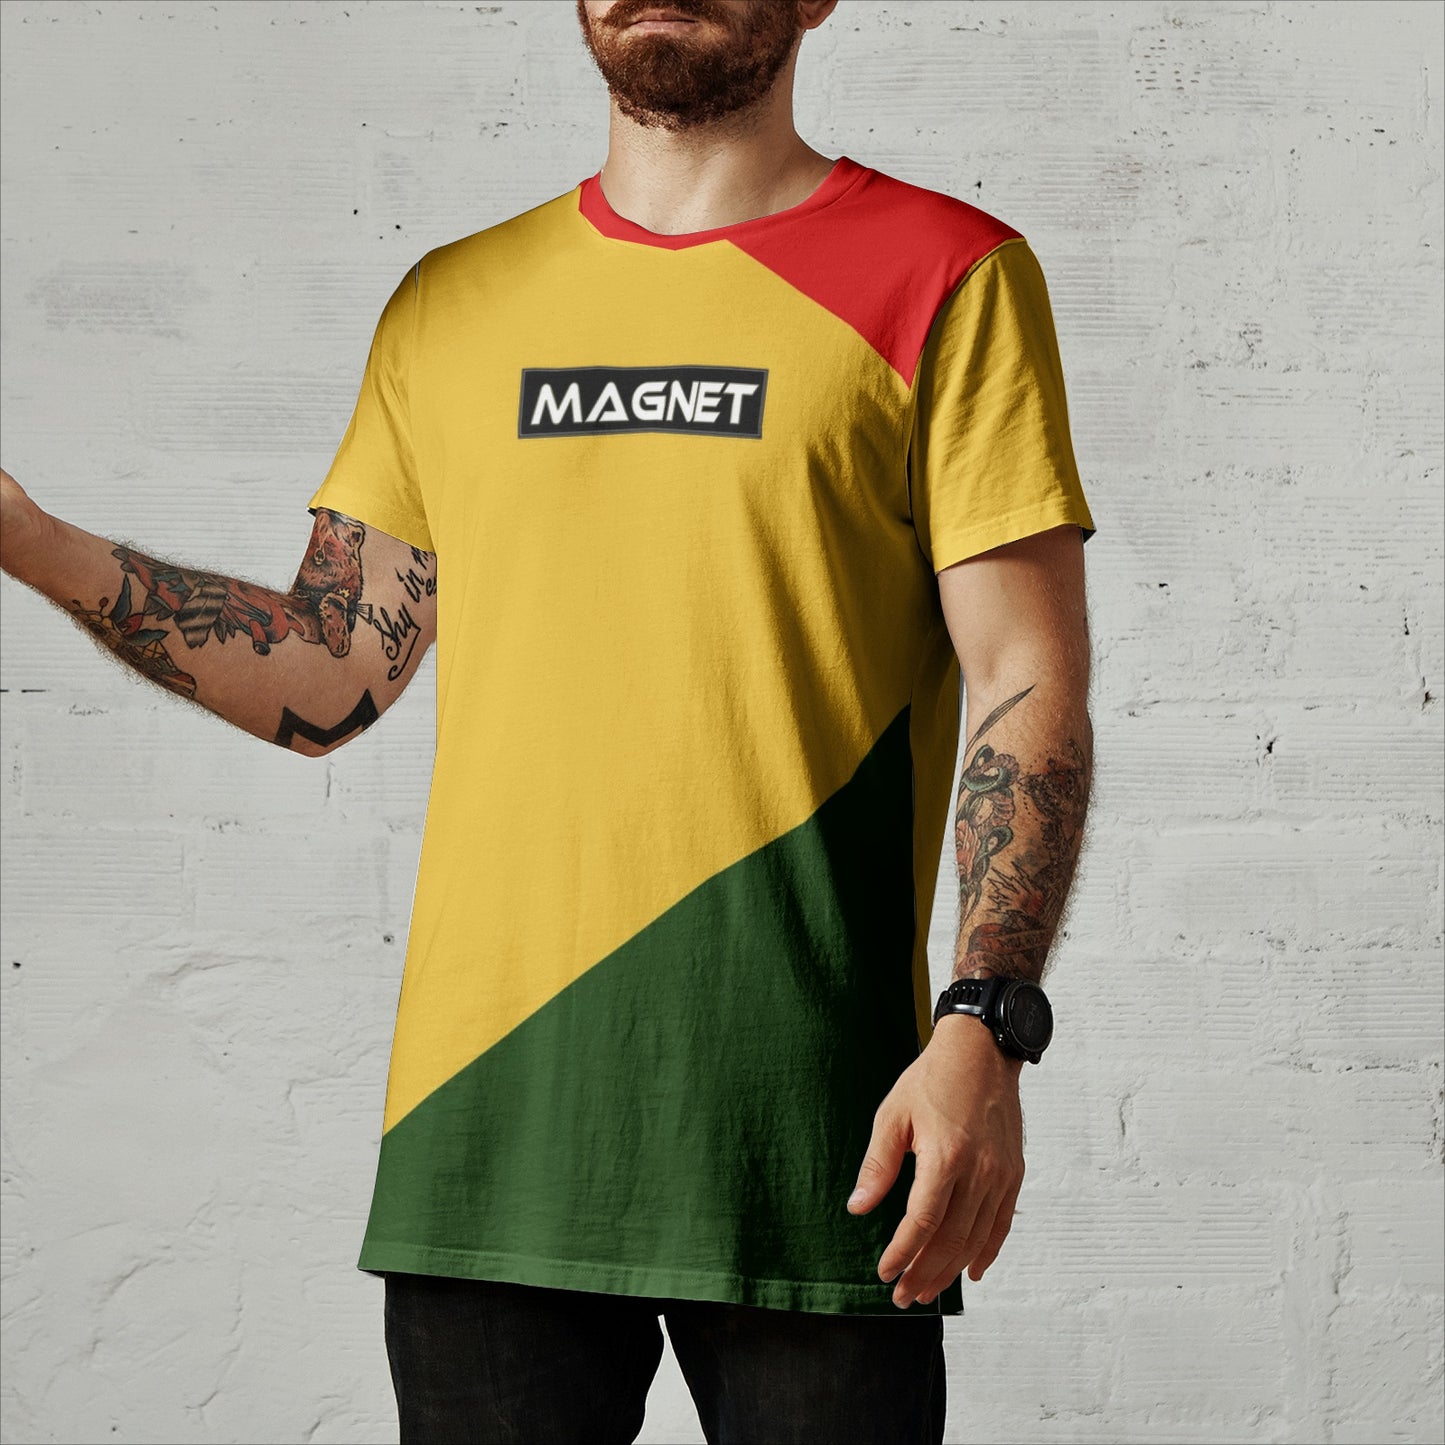 Magnet Sene Men's All-Over Print T-shirts